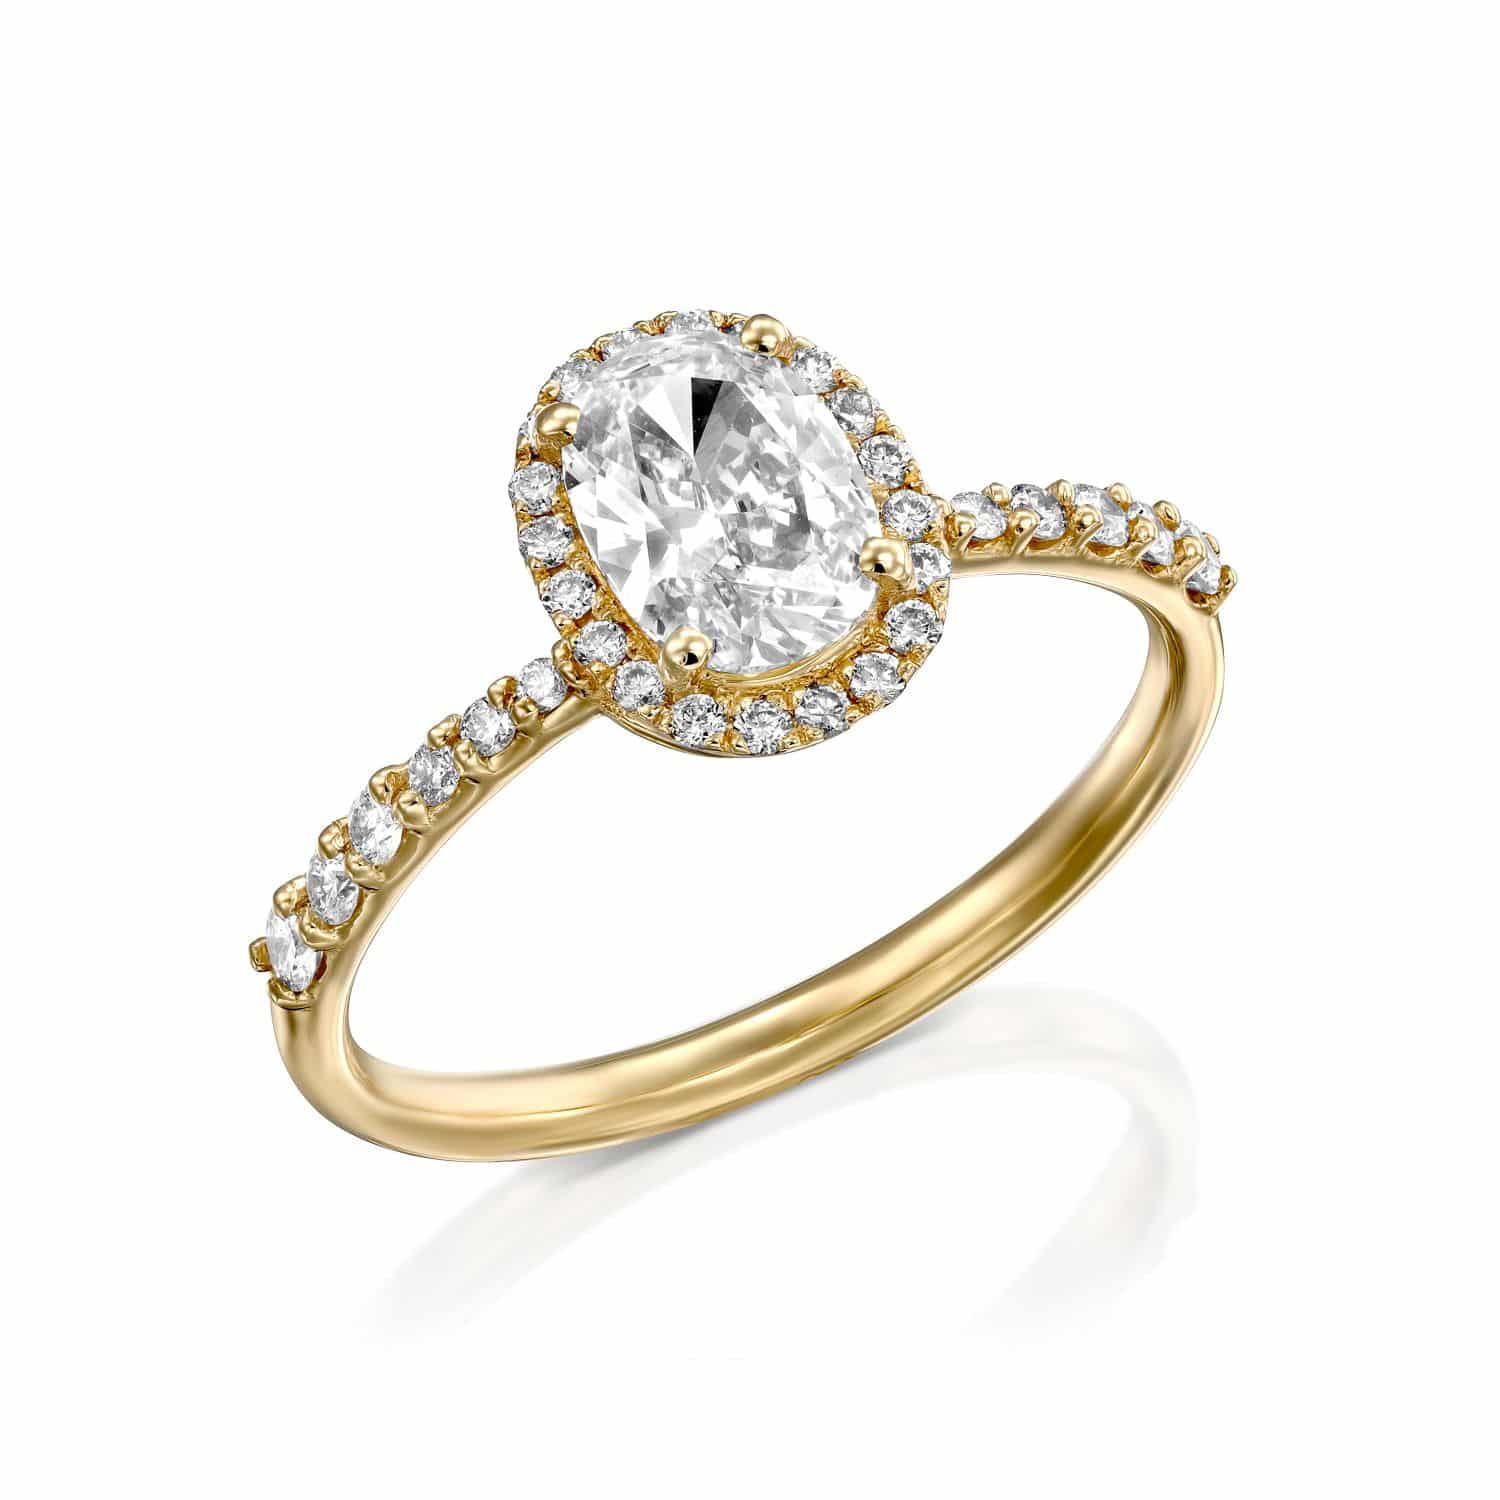 סיאל אלגנטי של טבעת אירוסין זהב הכולל יהלום מרכזי בצורת אגס מוקף בהילה של יהלומים עגולים קטנים יותר.